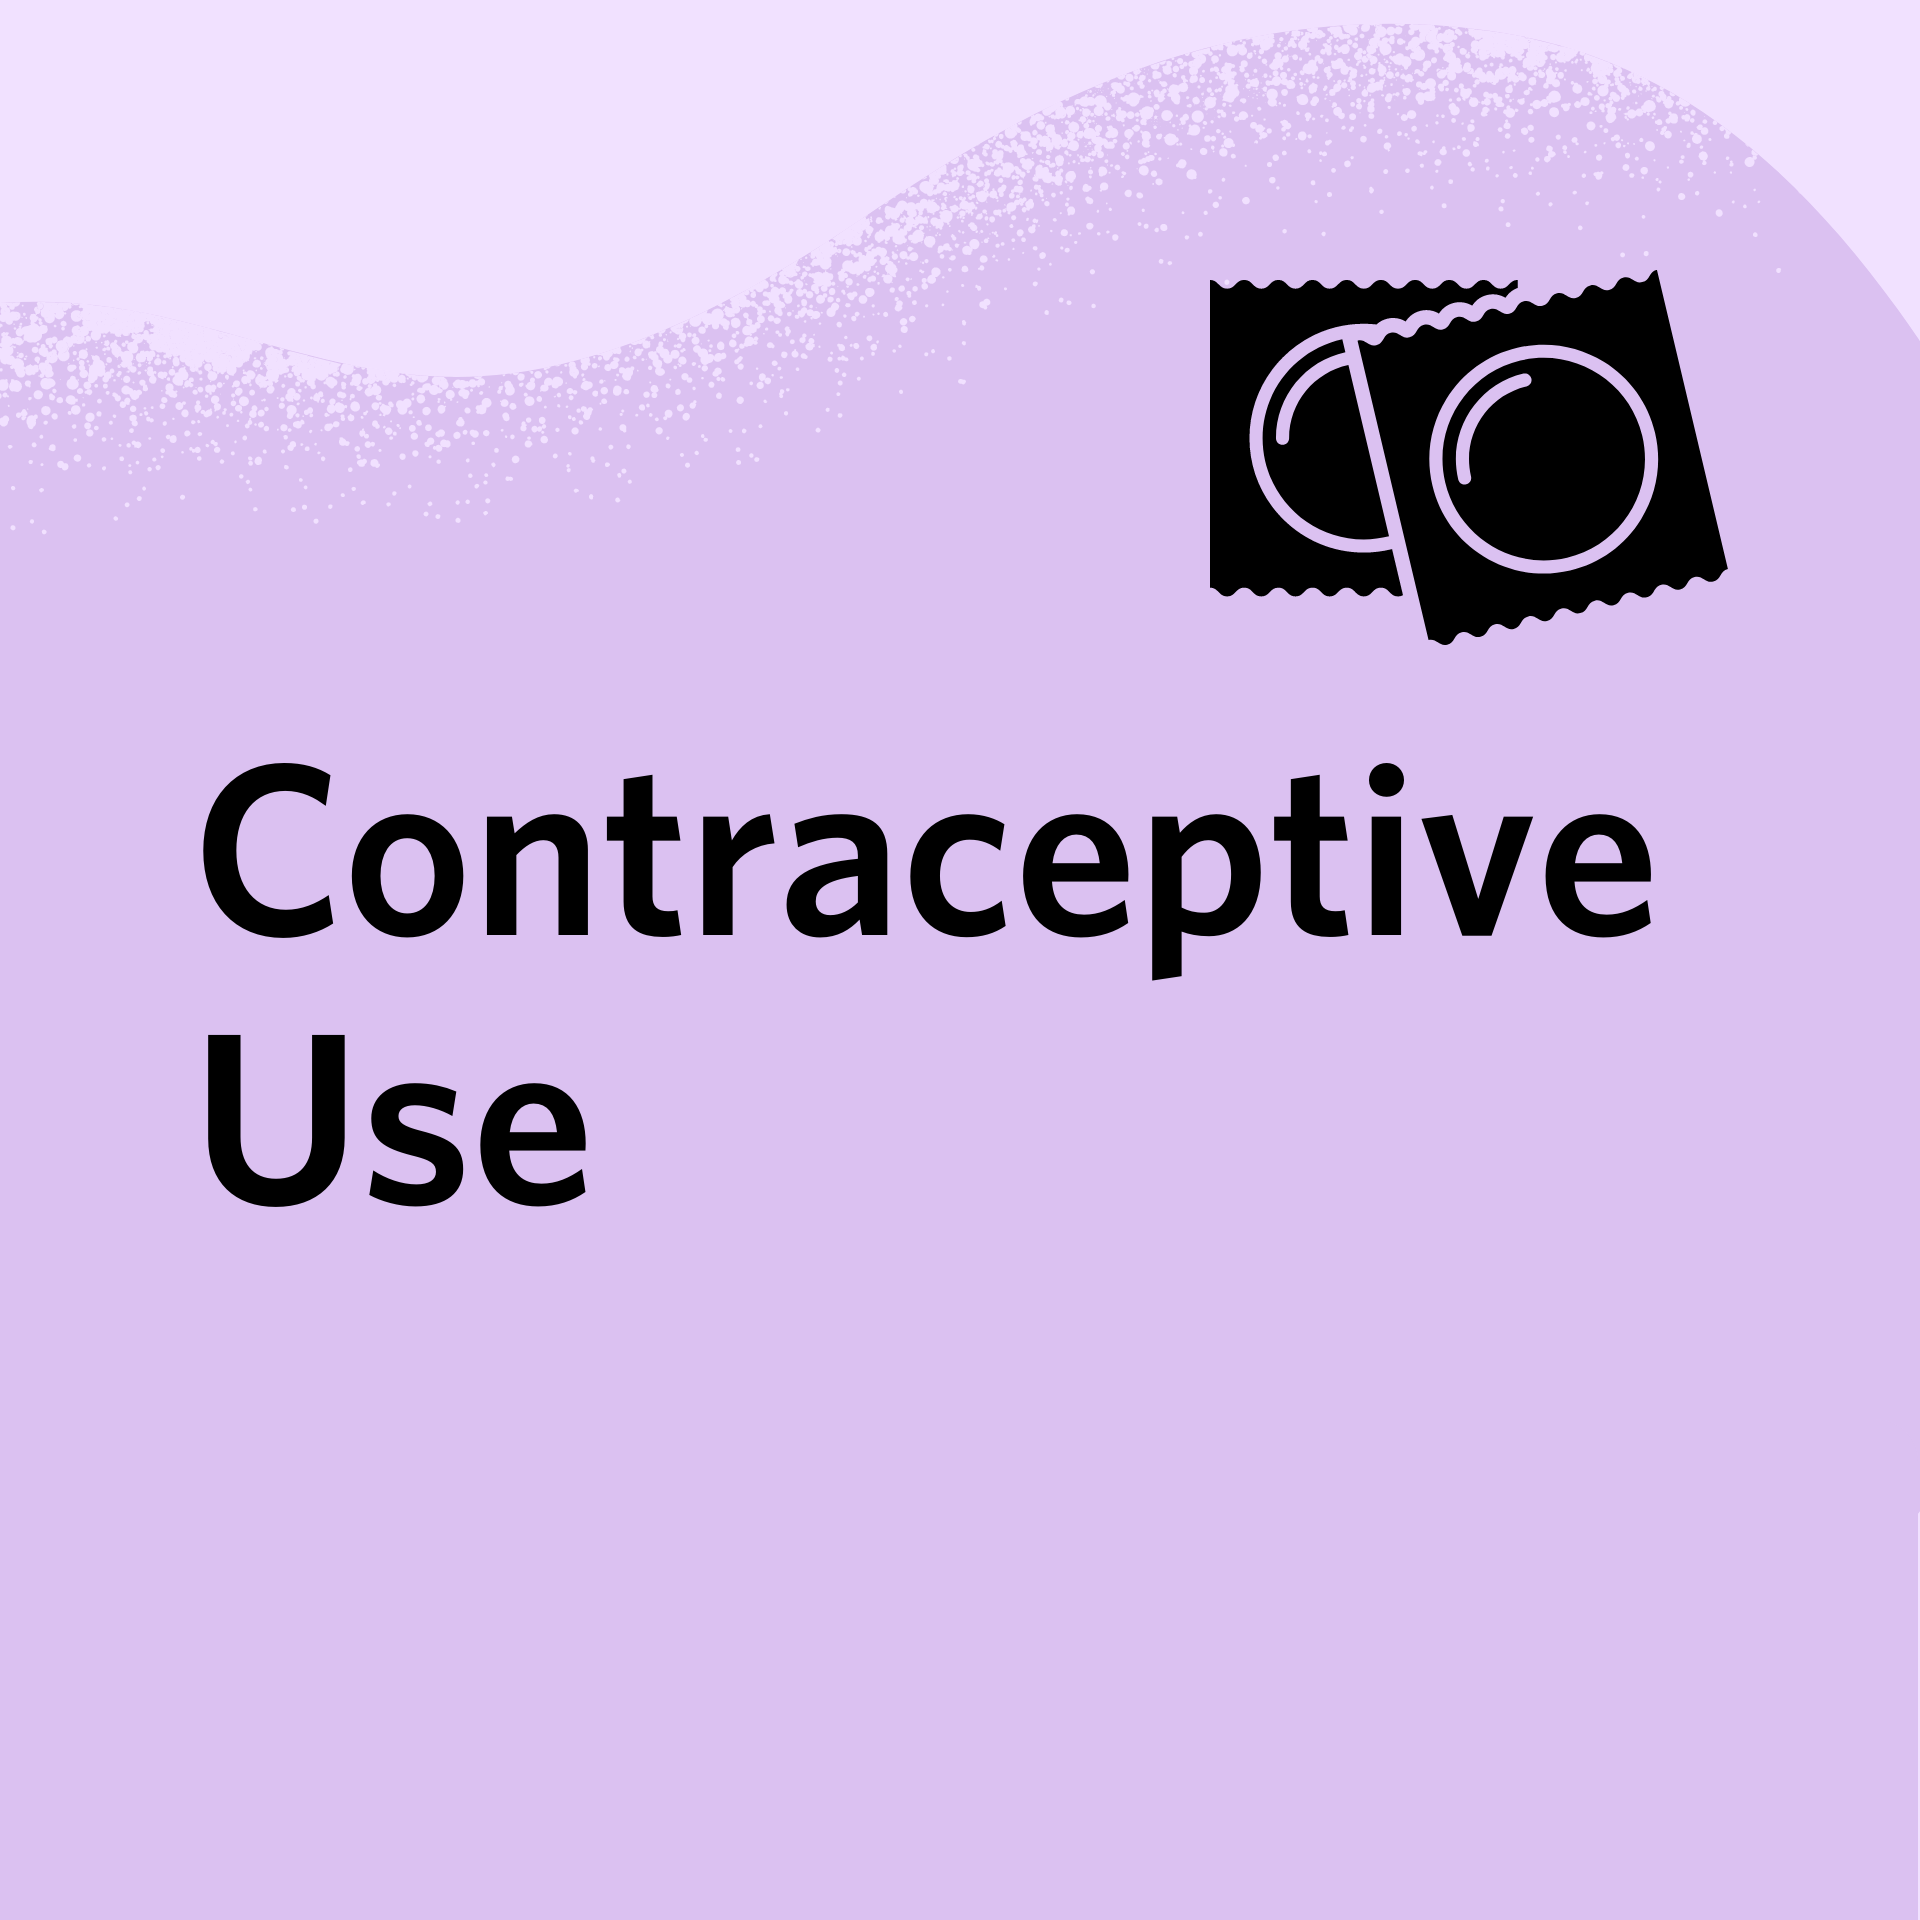 Contraceptive Use